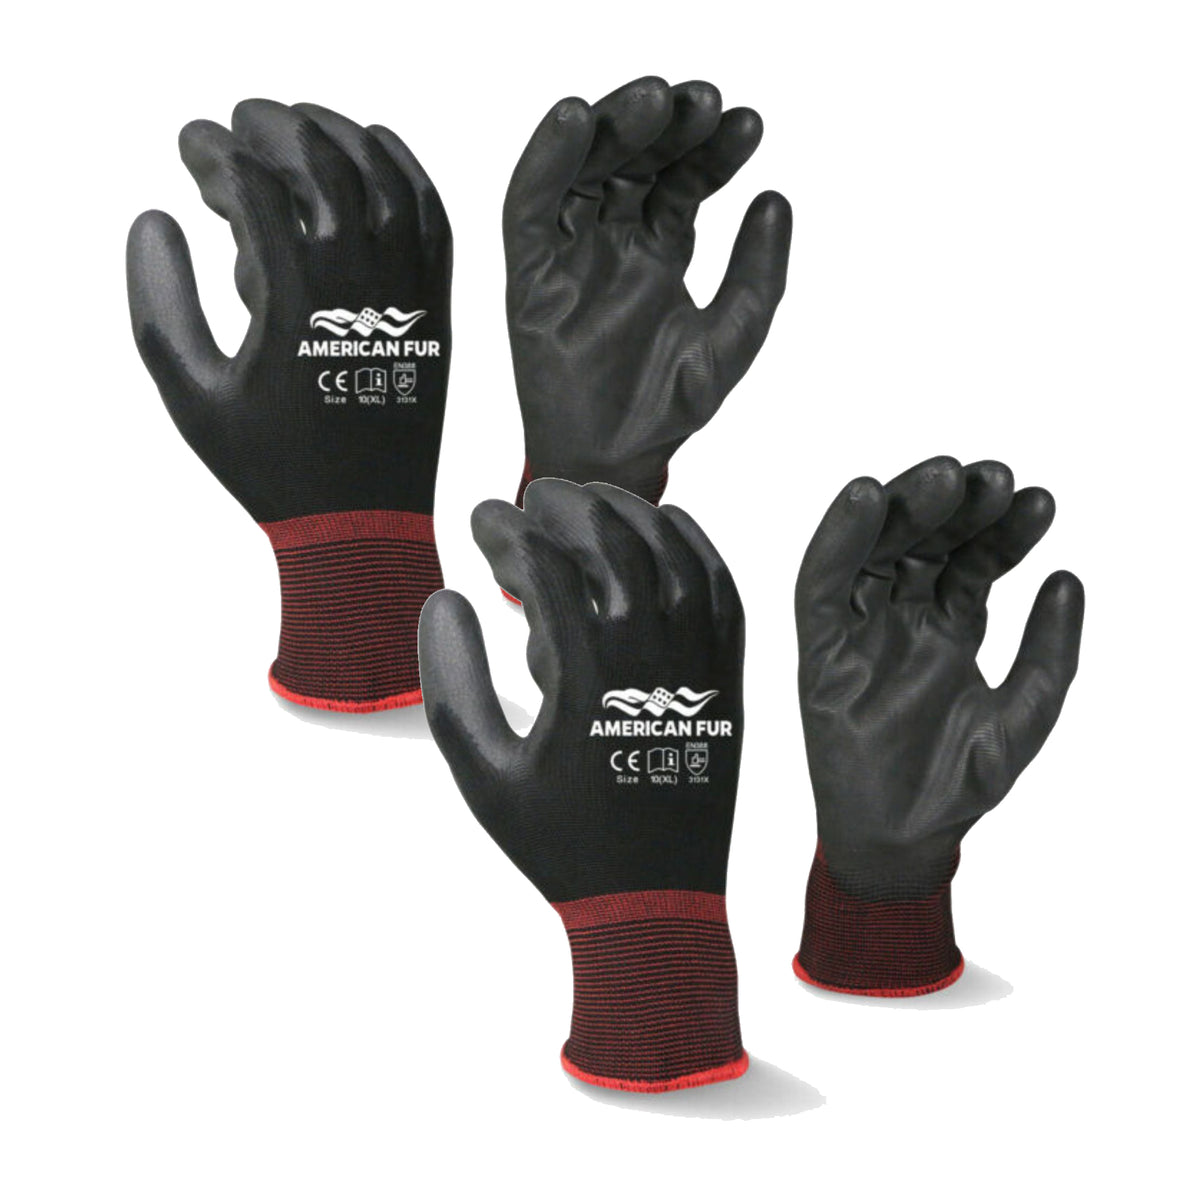 Foraker, PU-Coated, Polyurethane Construction Gloves